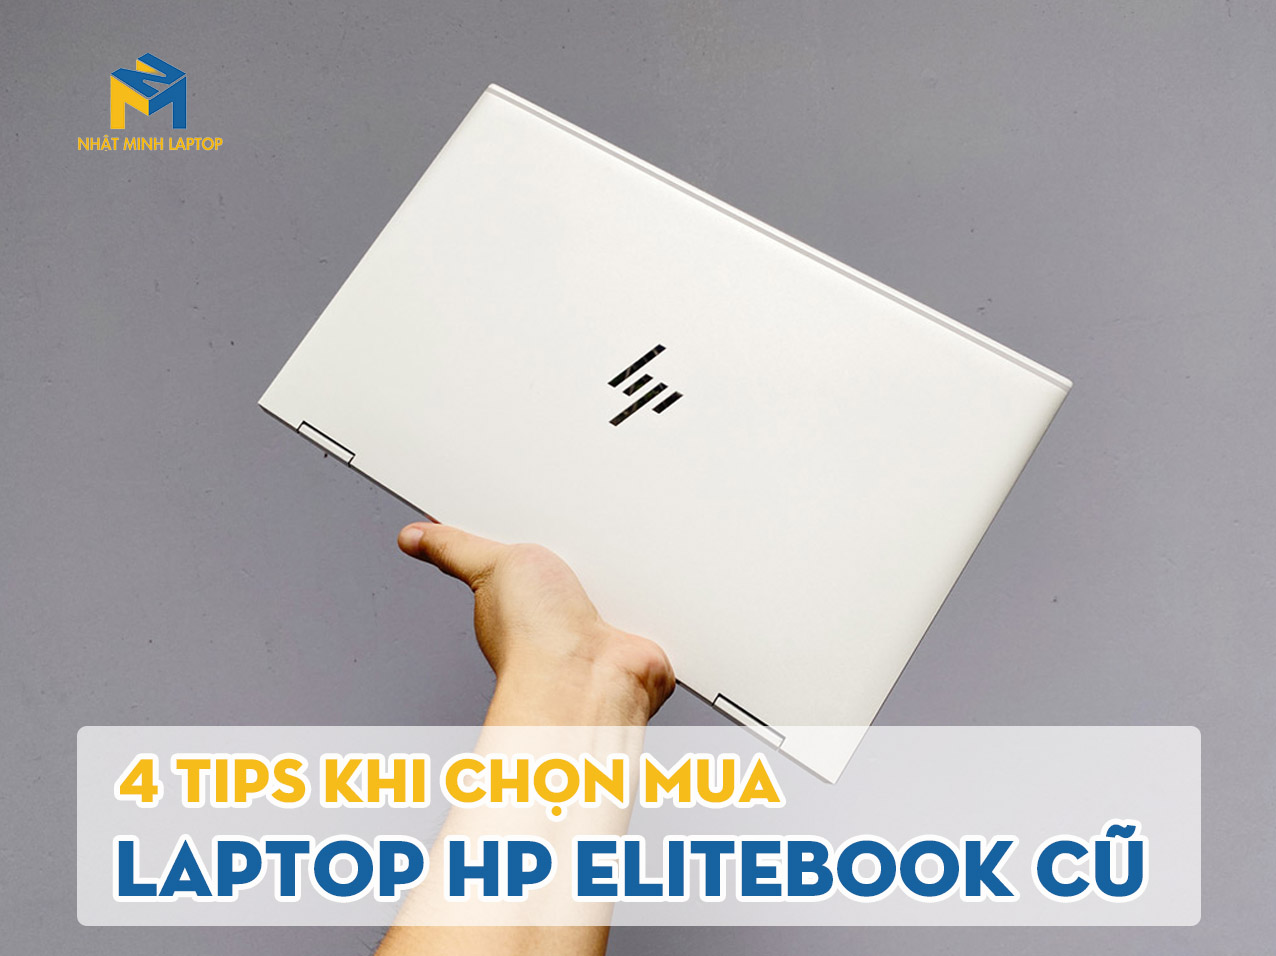 Nhật Minh chia sẻ 4 Tips khi chọn HP Elitebook cũ giá rẻ